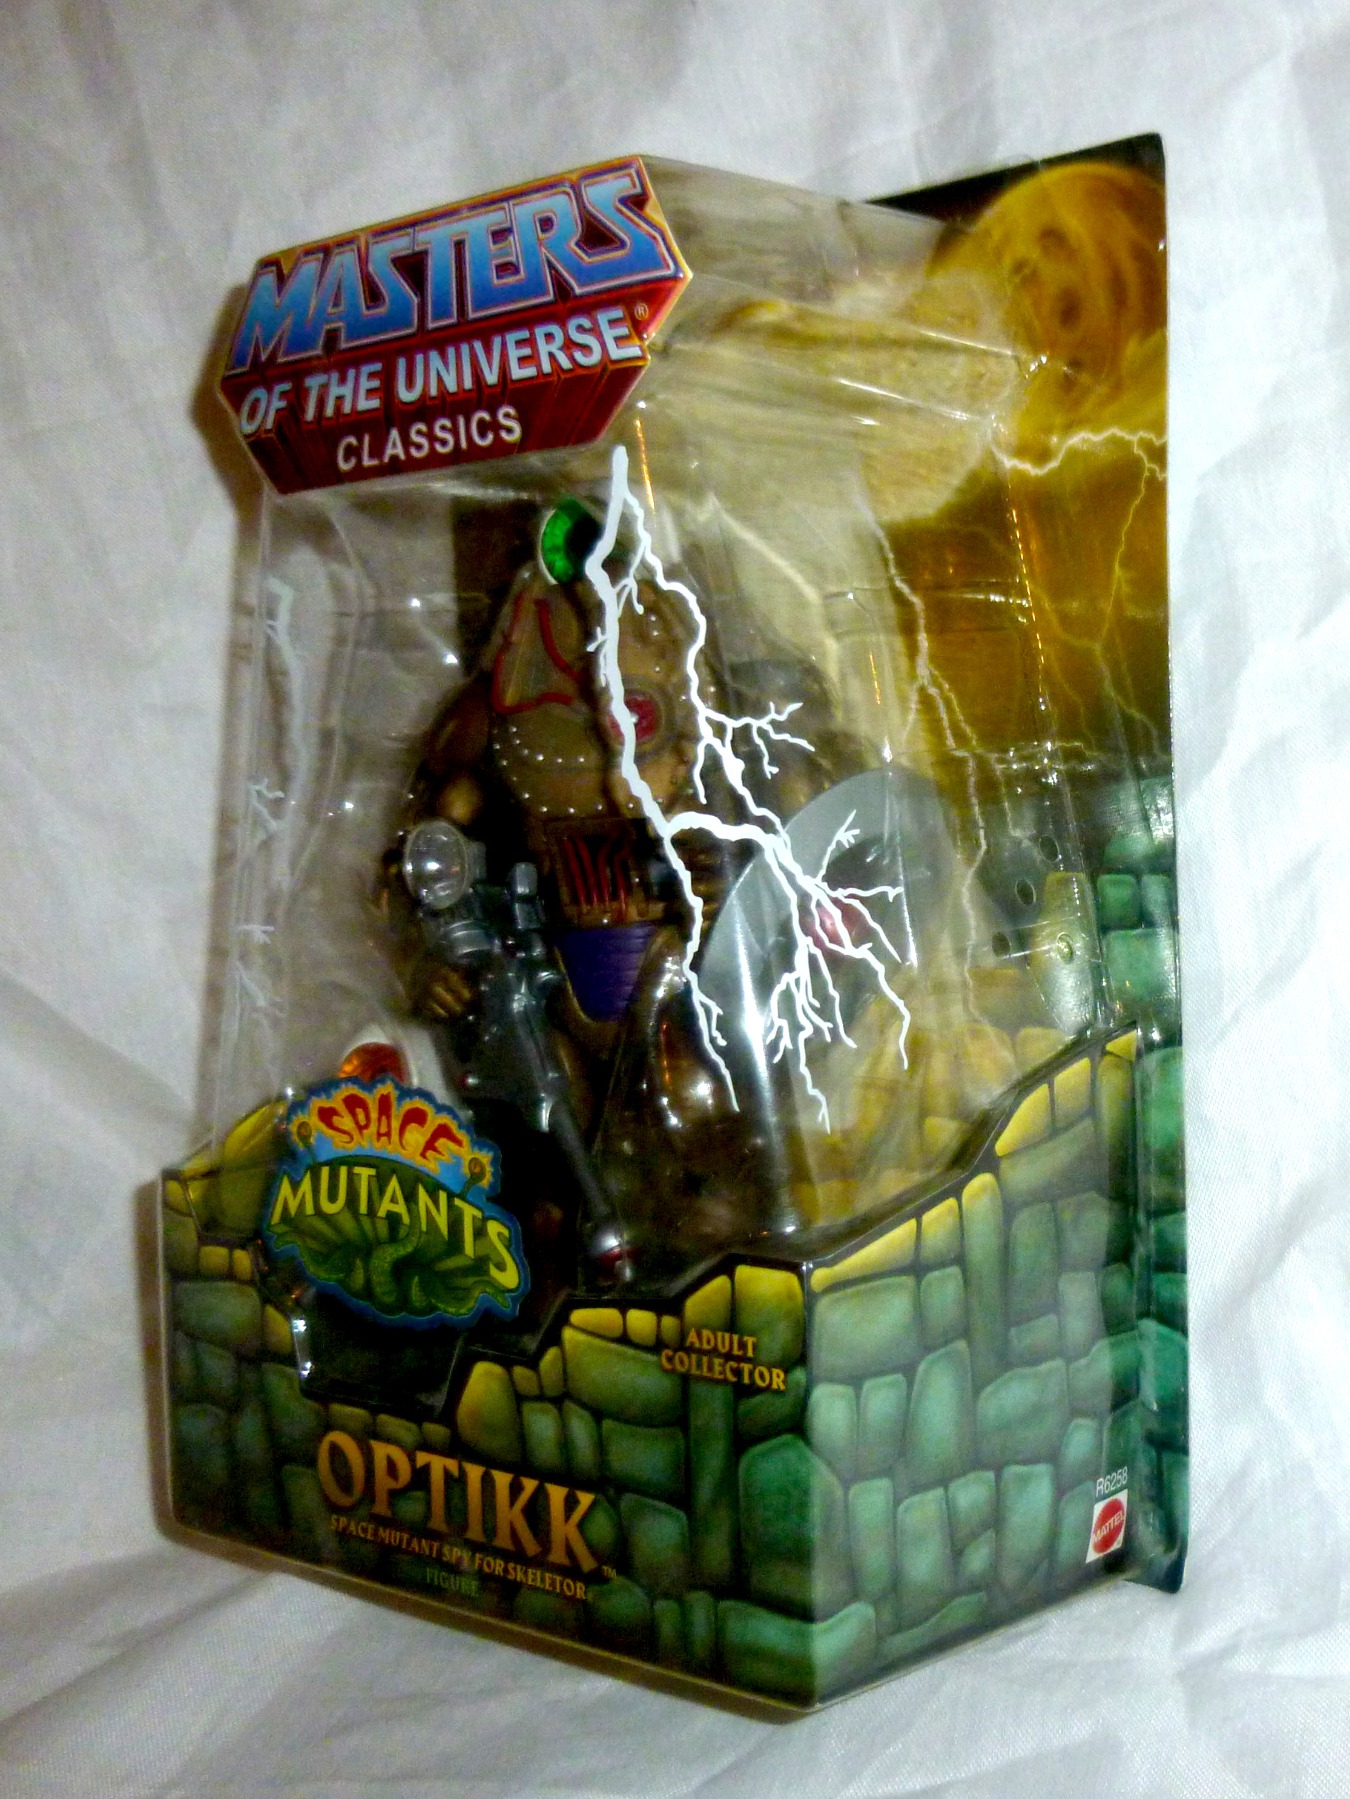 Optikk - Space Mutant Spy for Skeletor 4